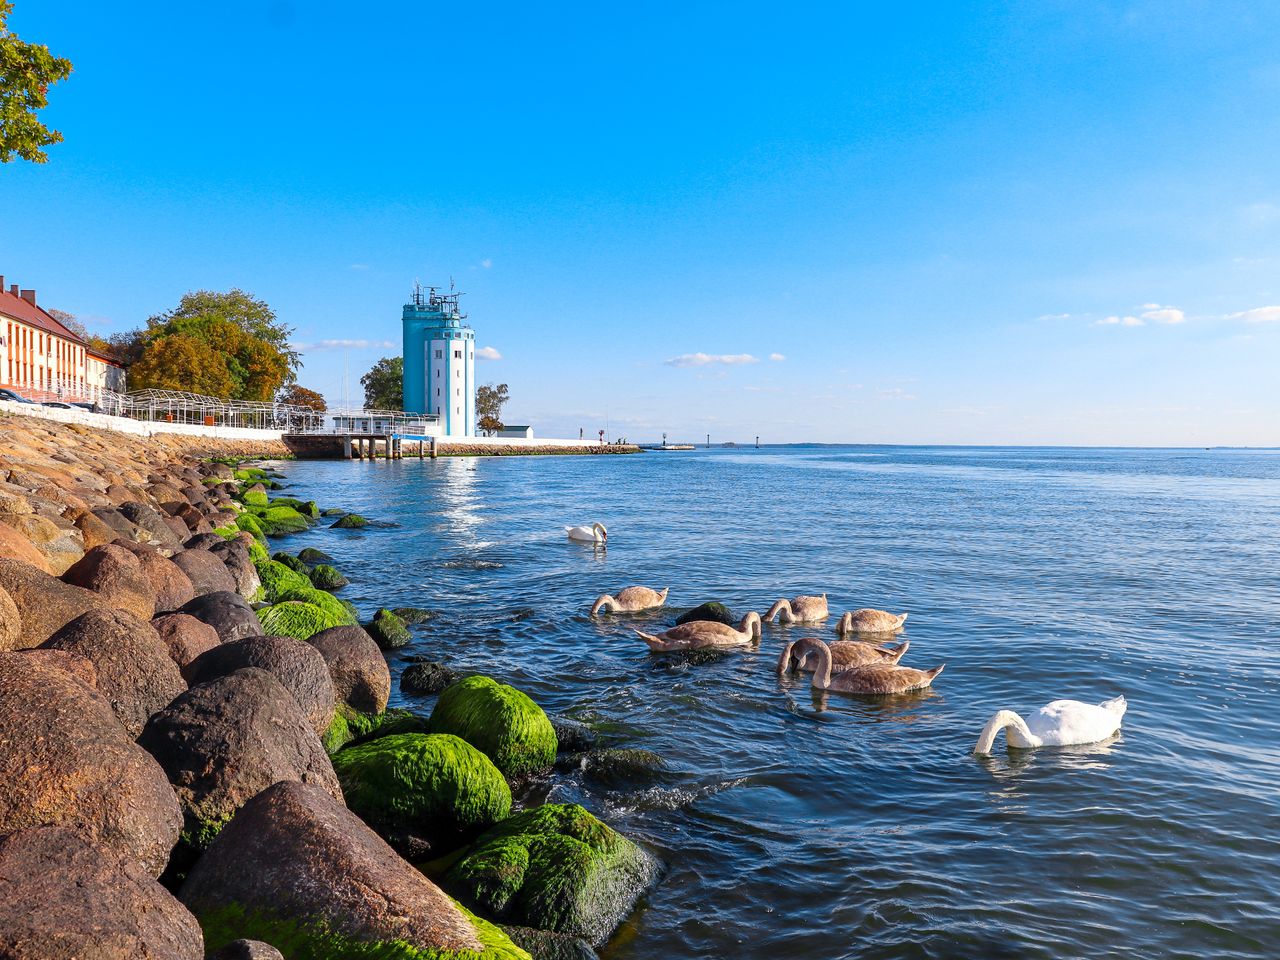 Красоты побережья Балтики | Цена 10700₽, отзывы, описание экскурсии